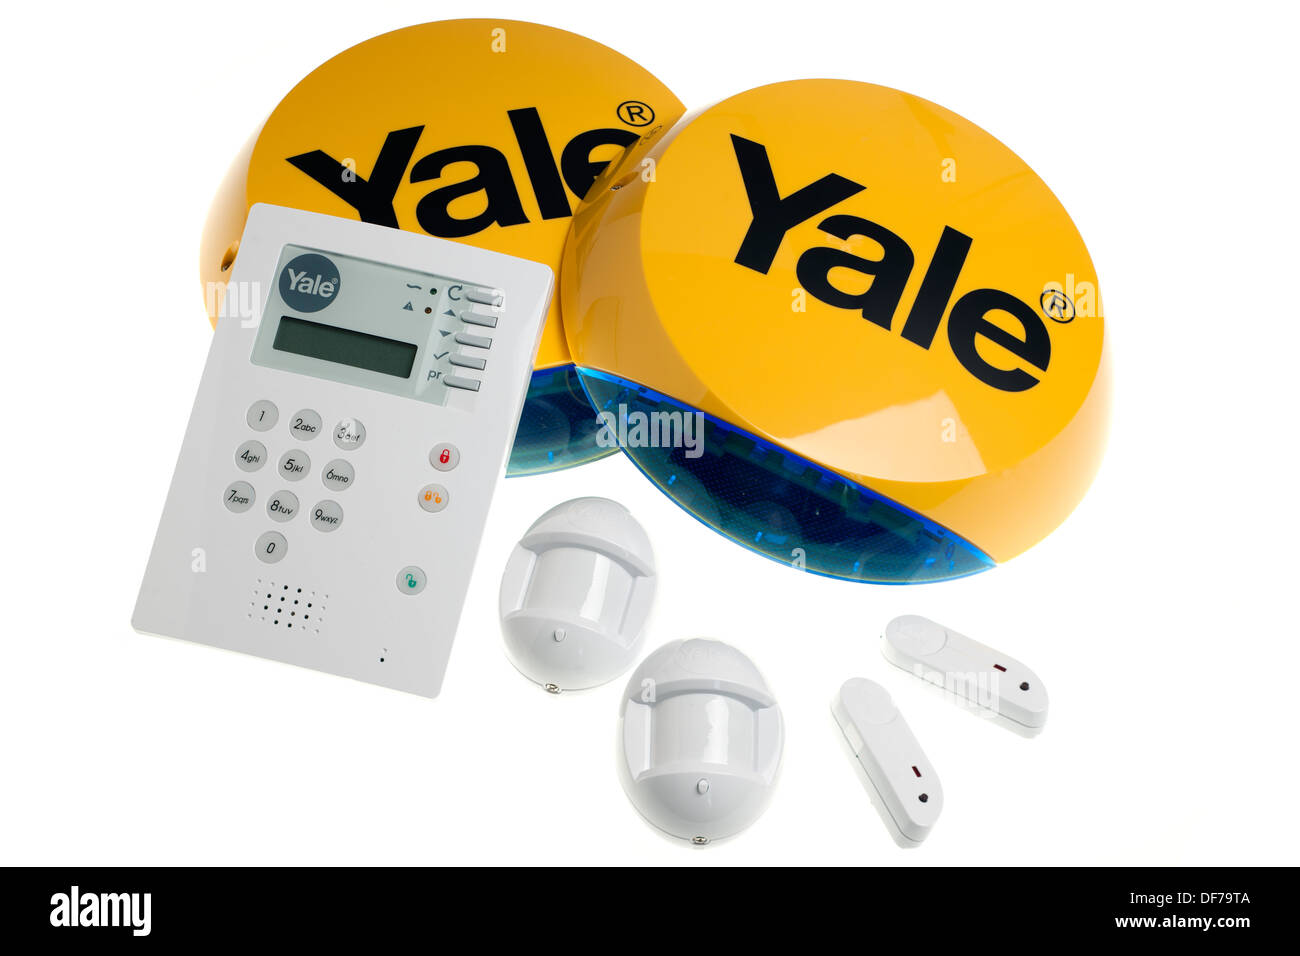 Yale wirefree wireless premium alarm Stock Photo